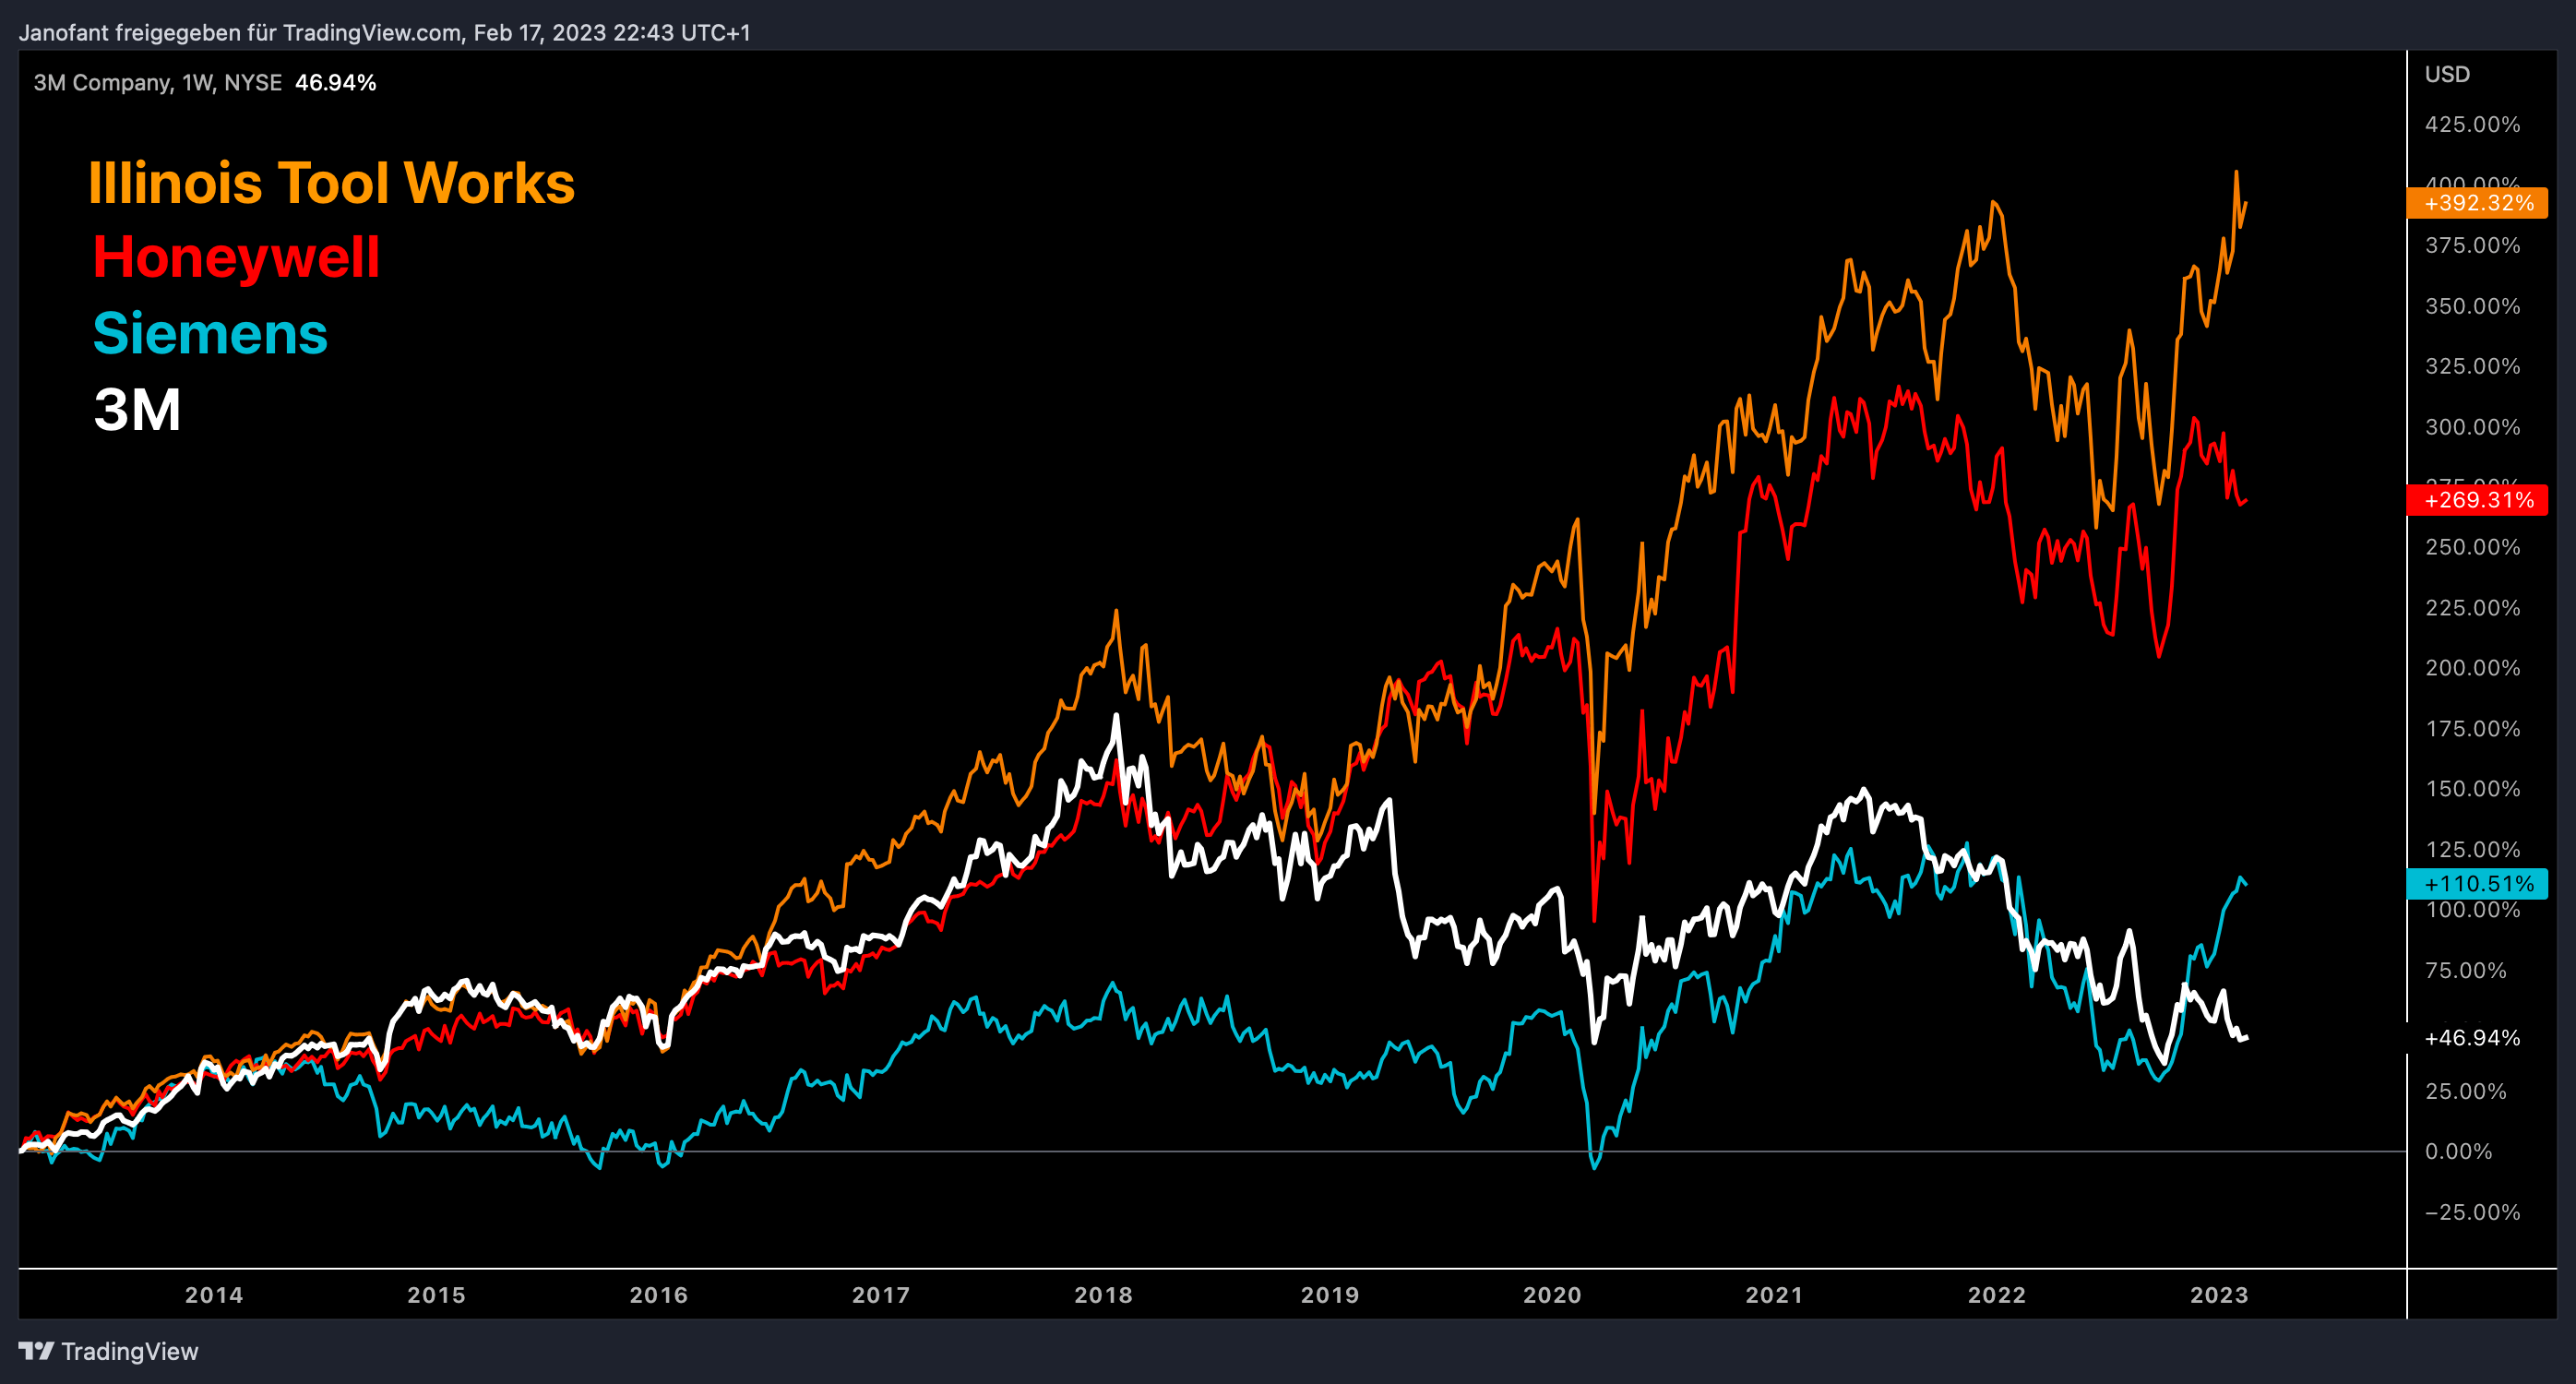 Performance der 3M Aktie in den letzten 10 Jahren